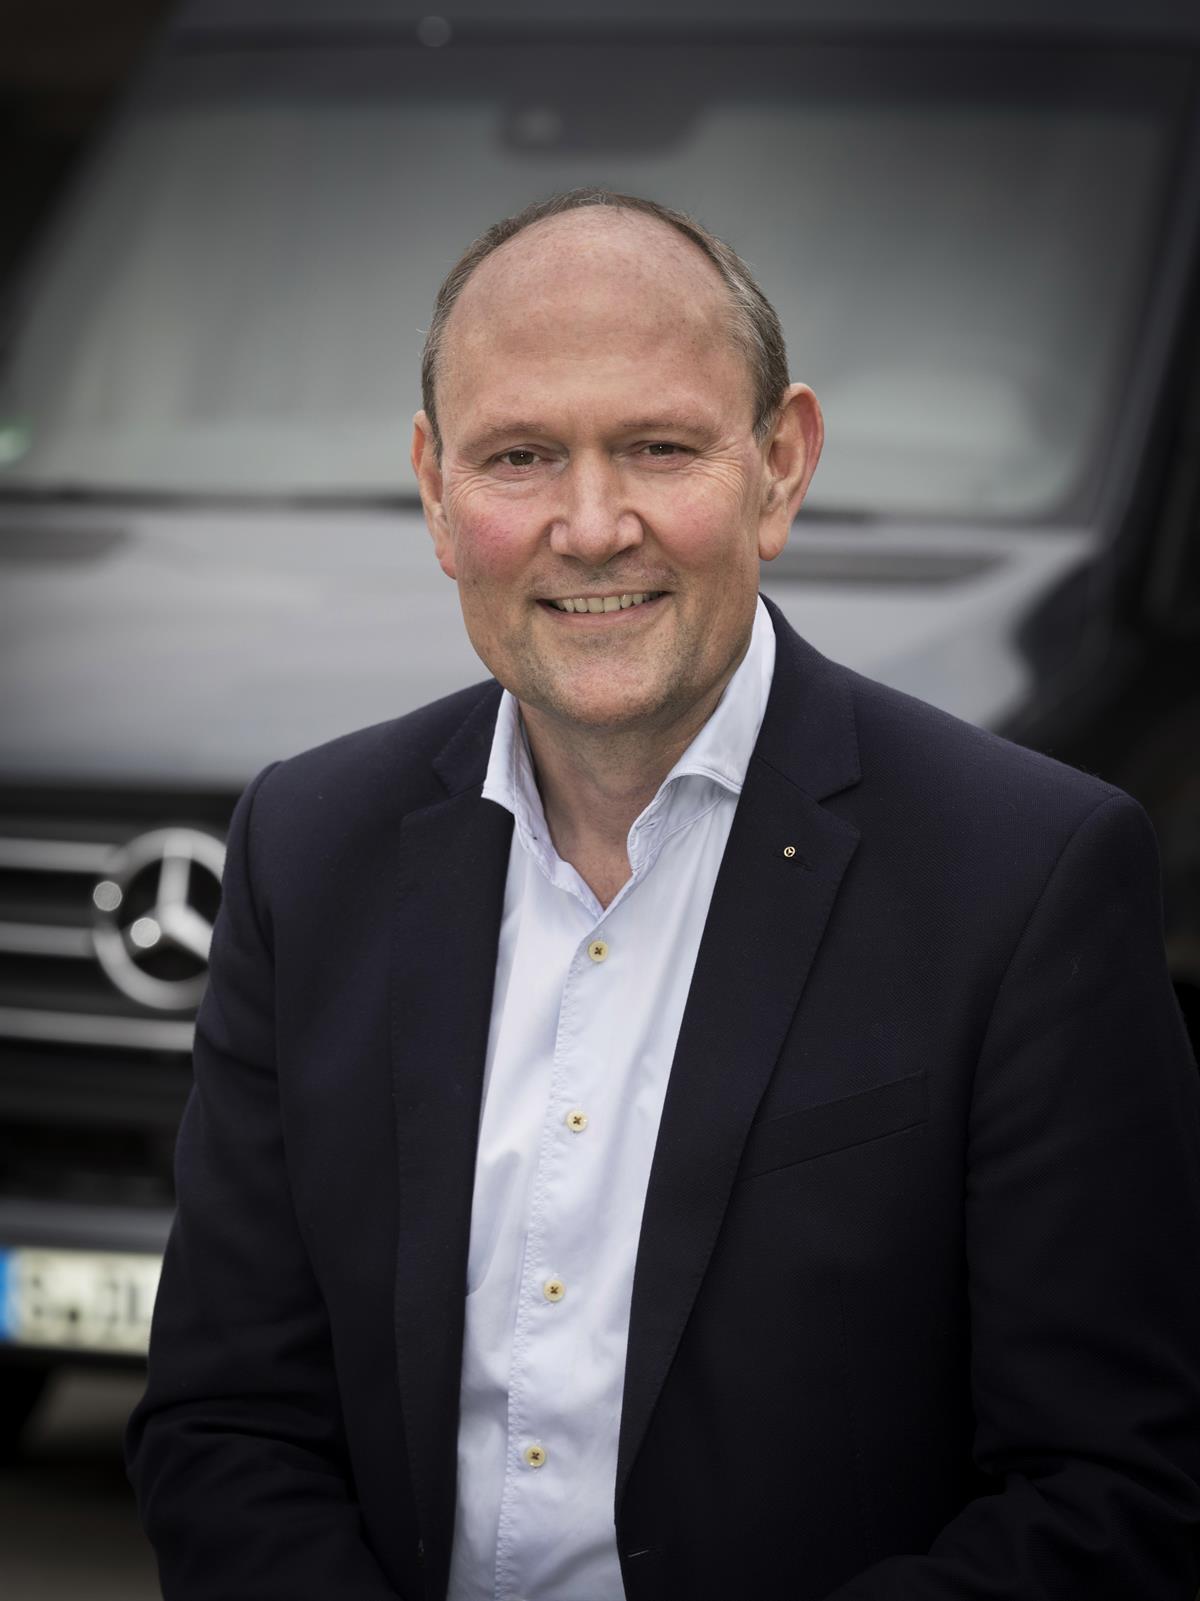 Marcus Breitschwerdt (57) übernimmt zum 1. Mai 2019 die Leitung von Mercedes-Benz Vans und verantwortet damit weltweit die Transporter-Sparte. 